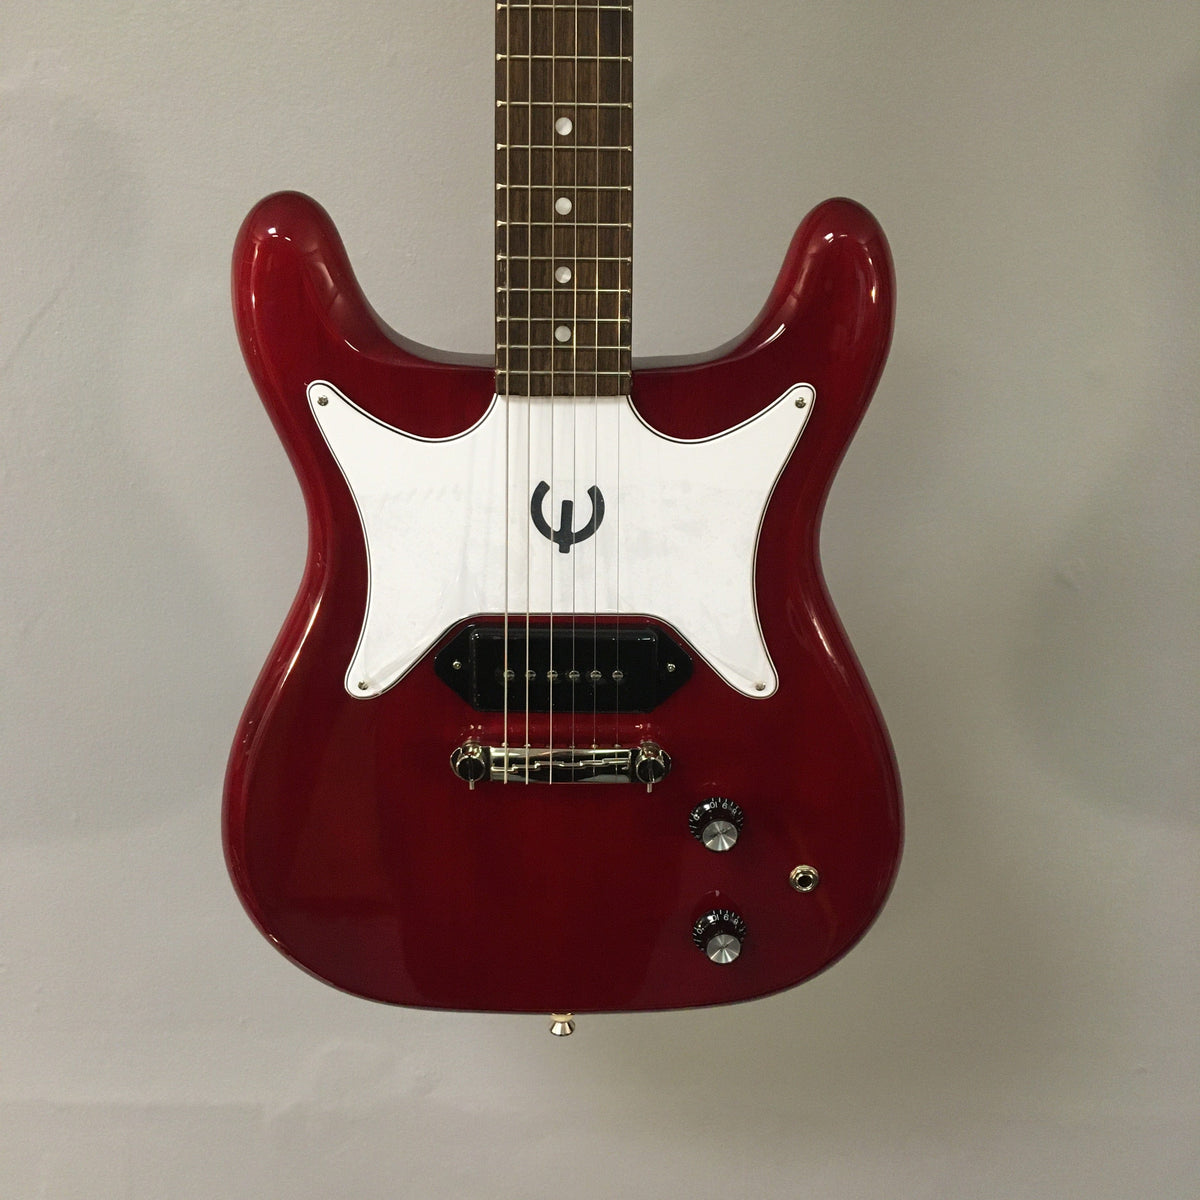 Epiphone Coronet Cherry Guitars on Main